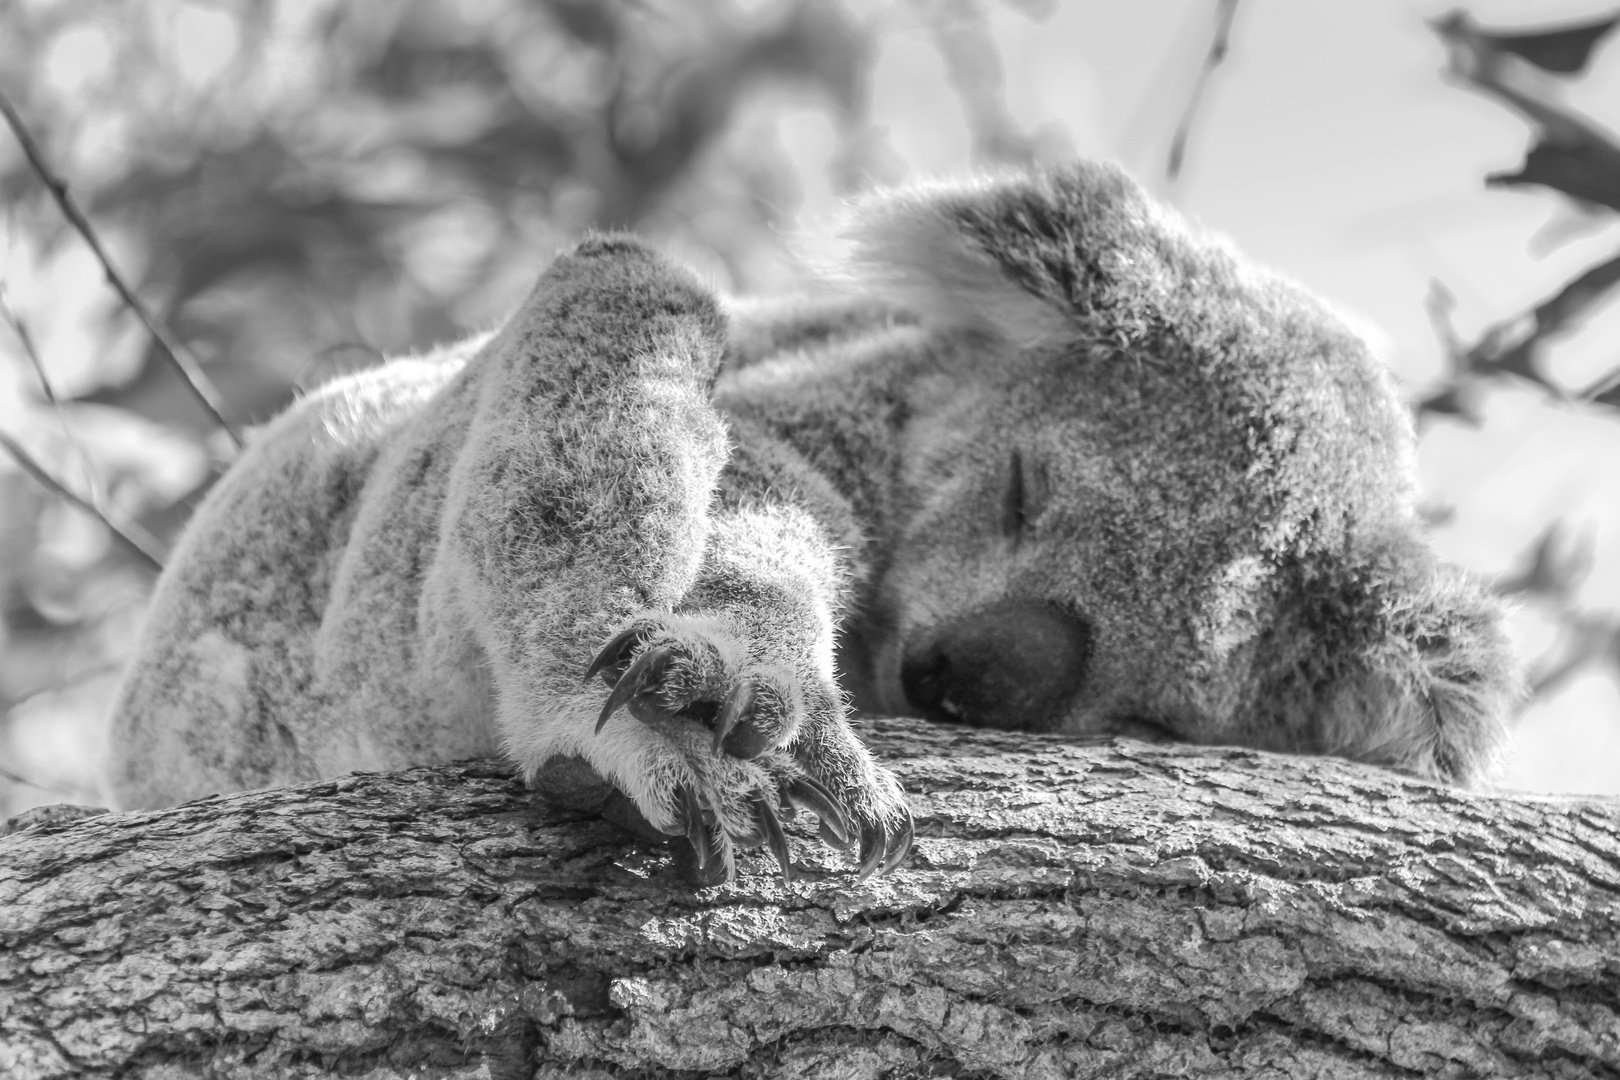 Koala "Nap"